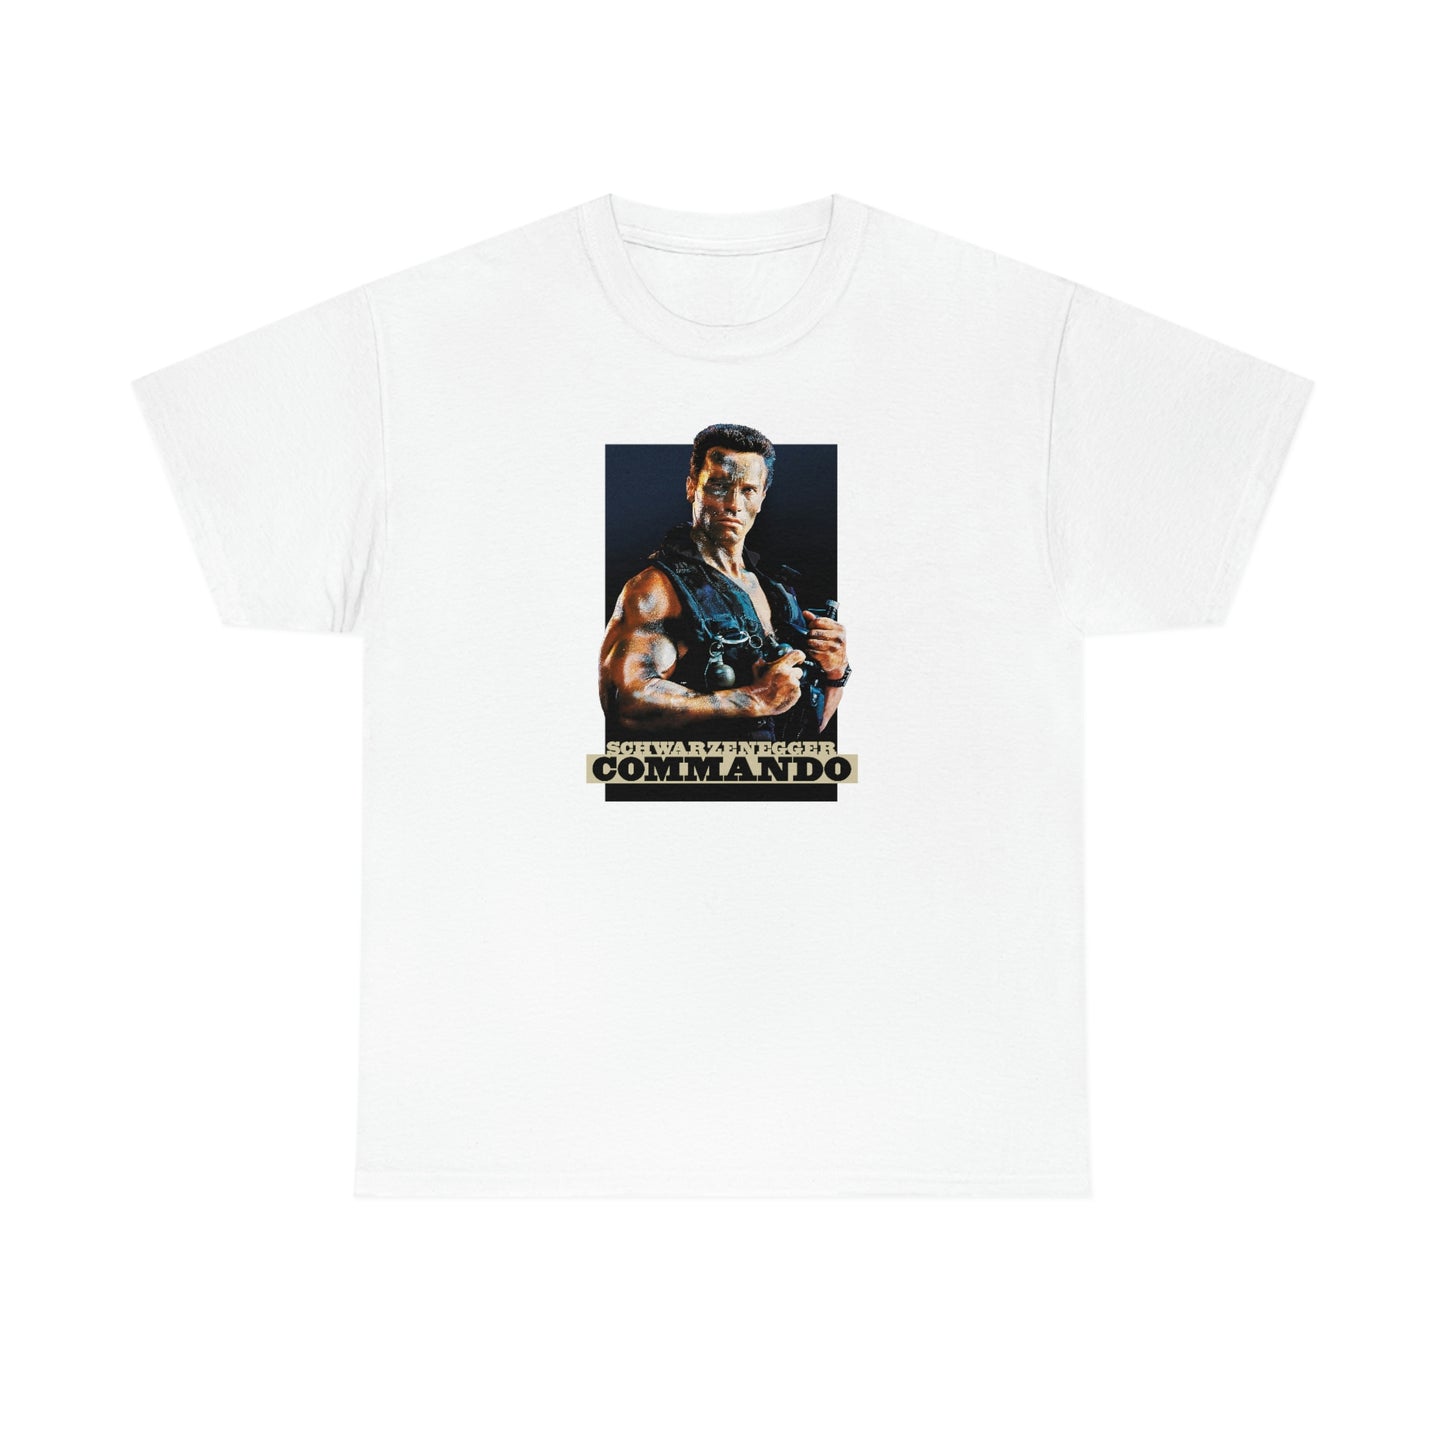 Commando T-Shirt